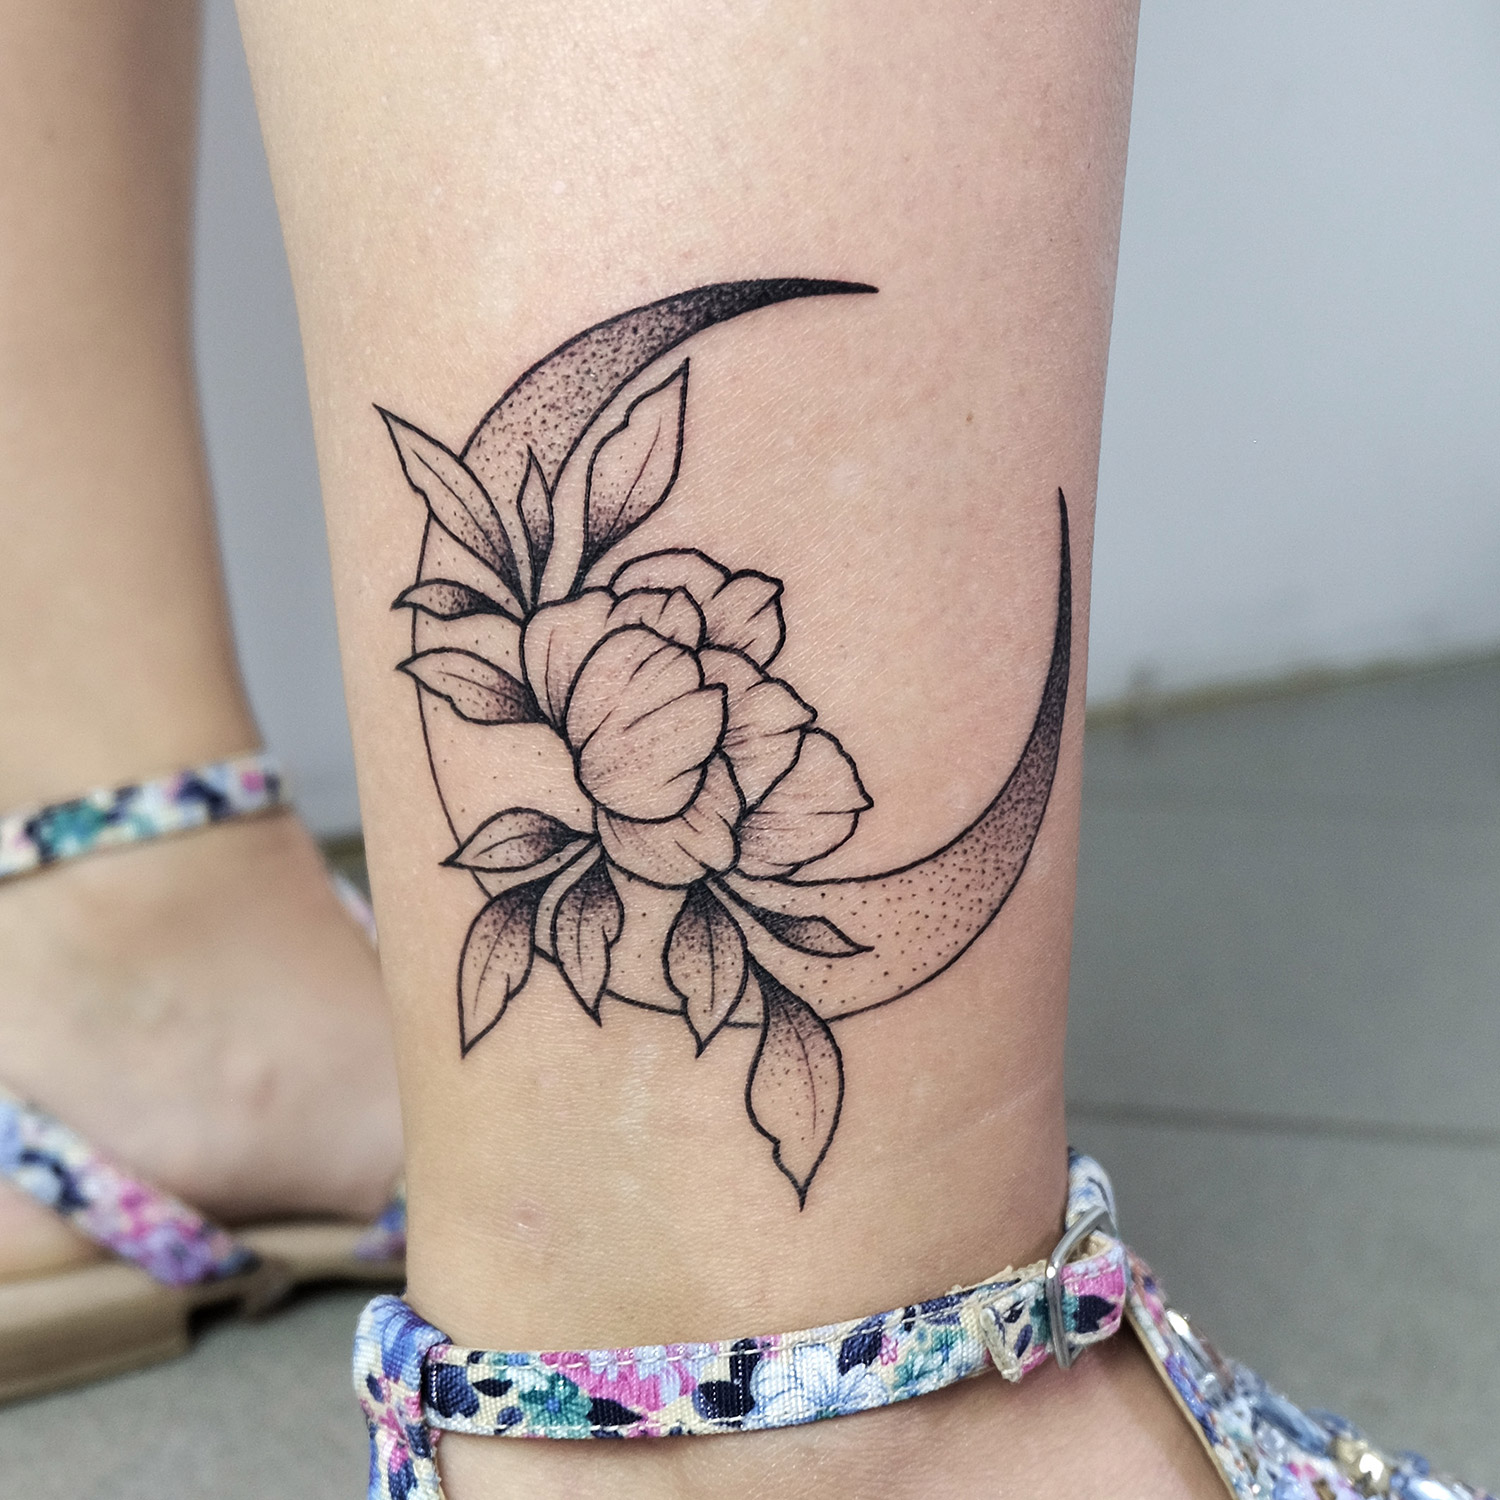 Hình xăm dưới chân đẹp  Thế Giới Tattoo  Xăm Hình Nghệ Thuật  Facebook